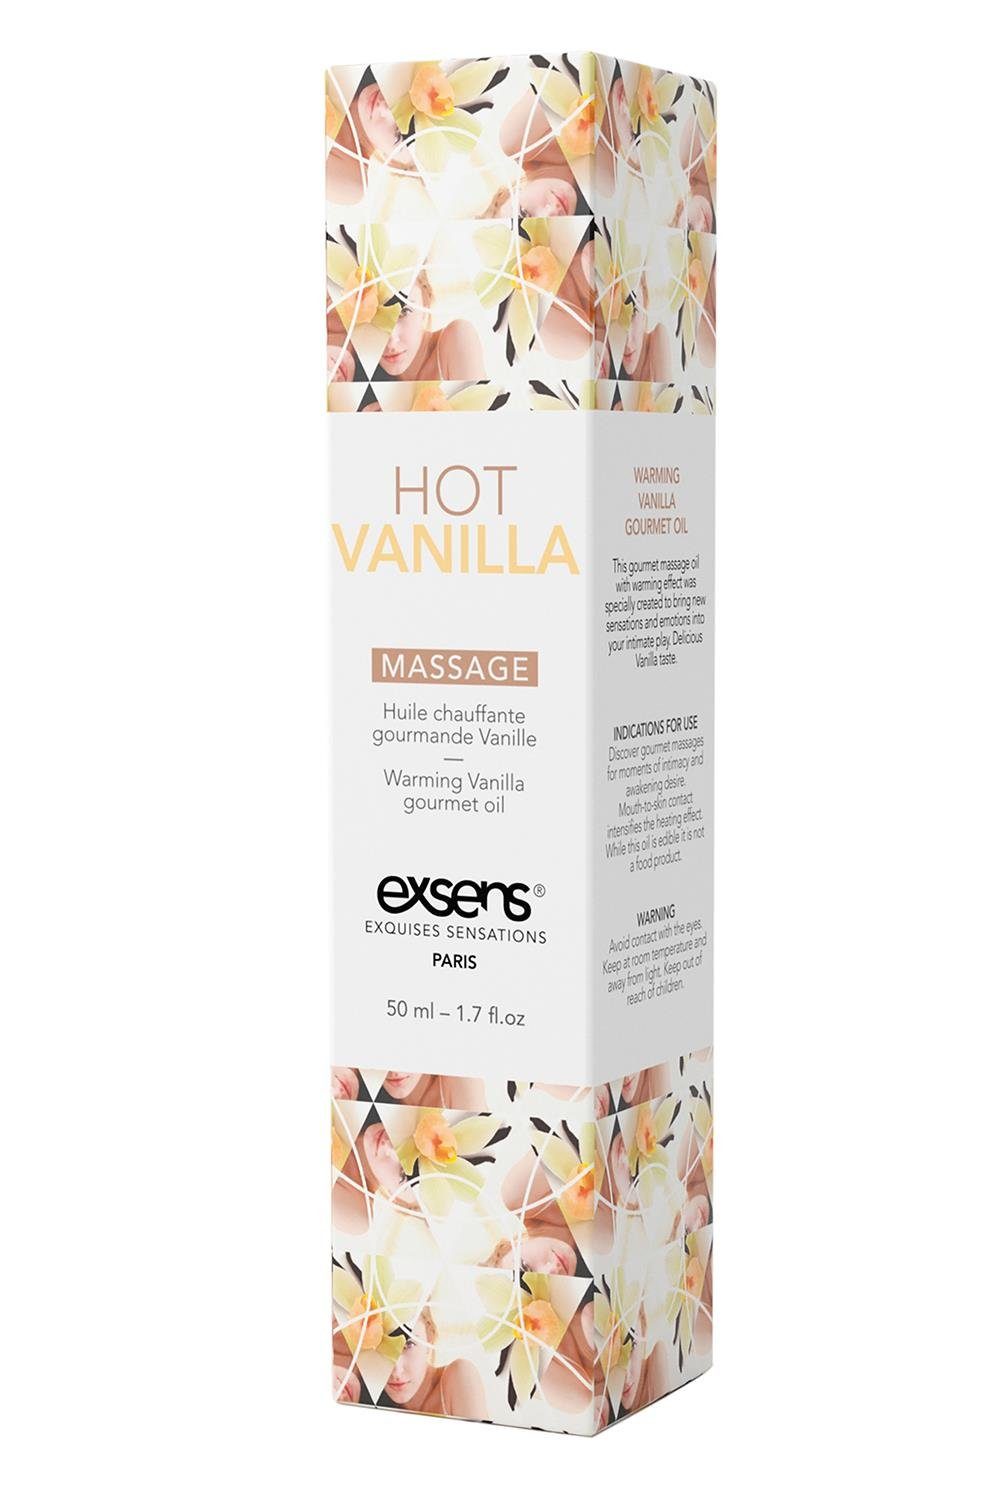 Warming Vanilla 50ml, Exsens klebrig Gleit- Nicht Oil Hot Massage Exsens & Massageöl